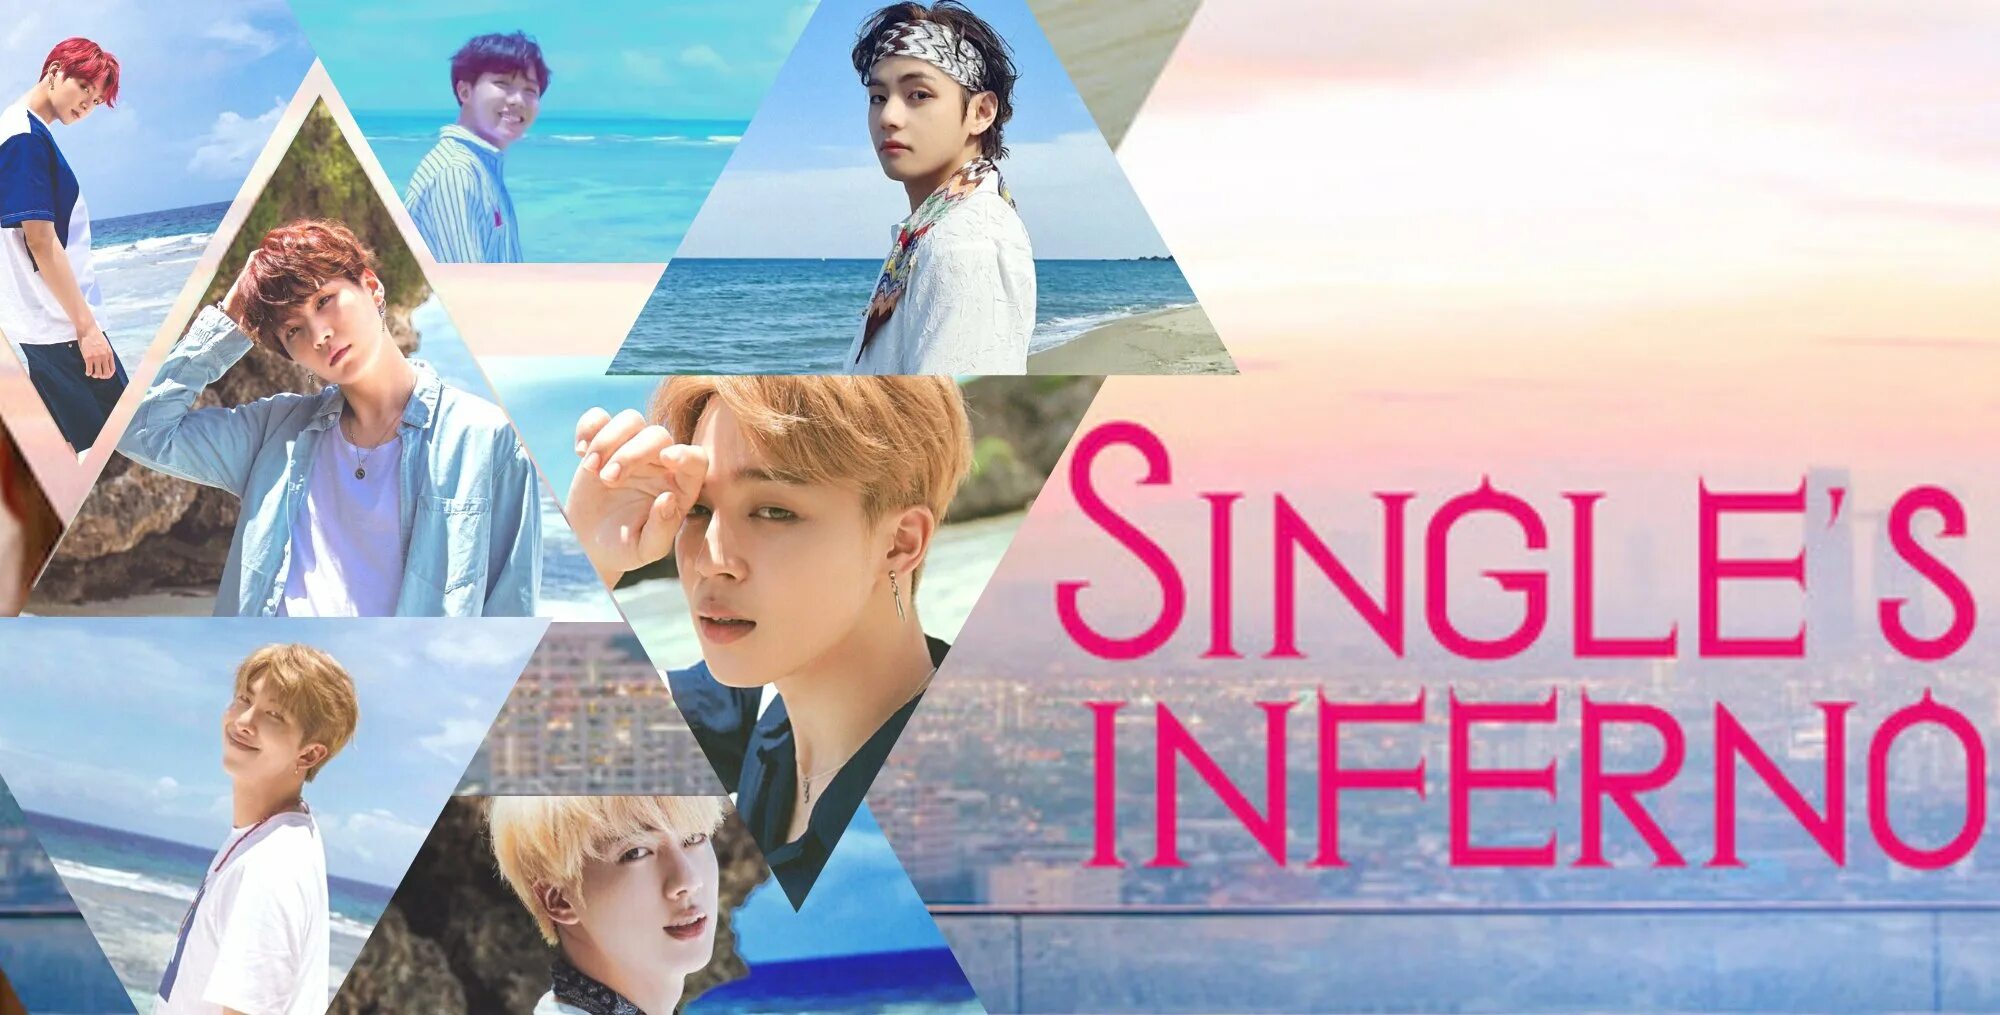 Singles Inferno 3. Song Jia Singles Inferno. Singles Inferno Hanbin.